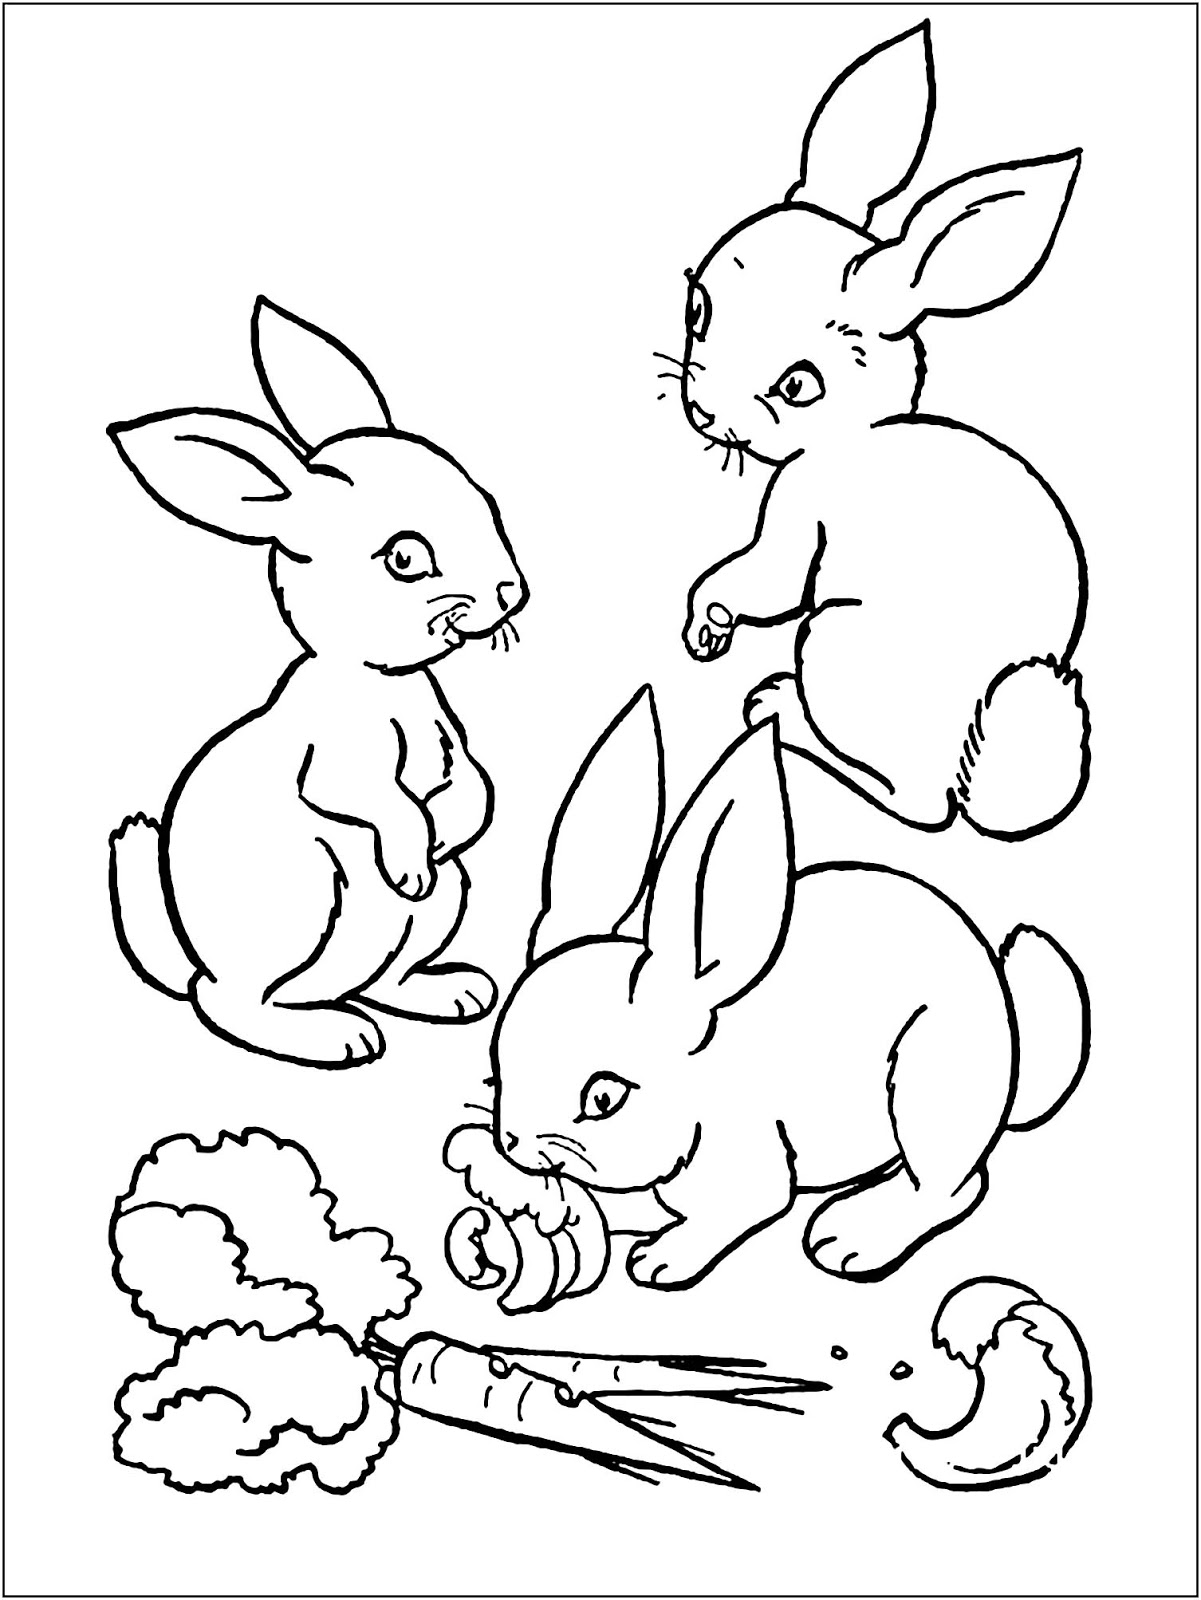 45+ Hình Vẽ Con Thỏ Để Tô Màu Đẹp Và Dễ Thương Cho Trẻ Em